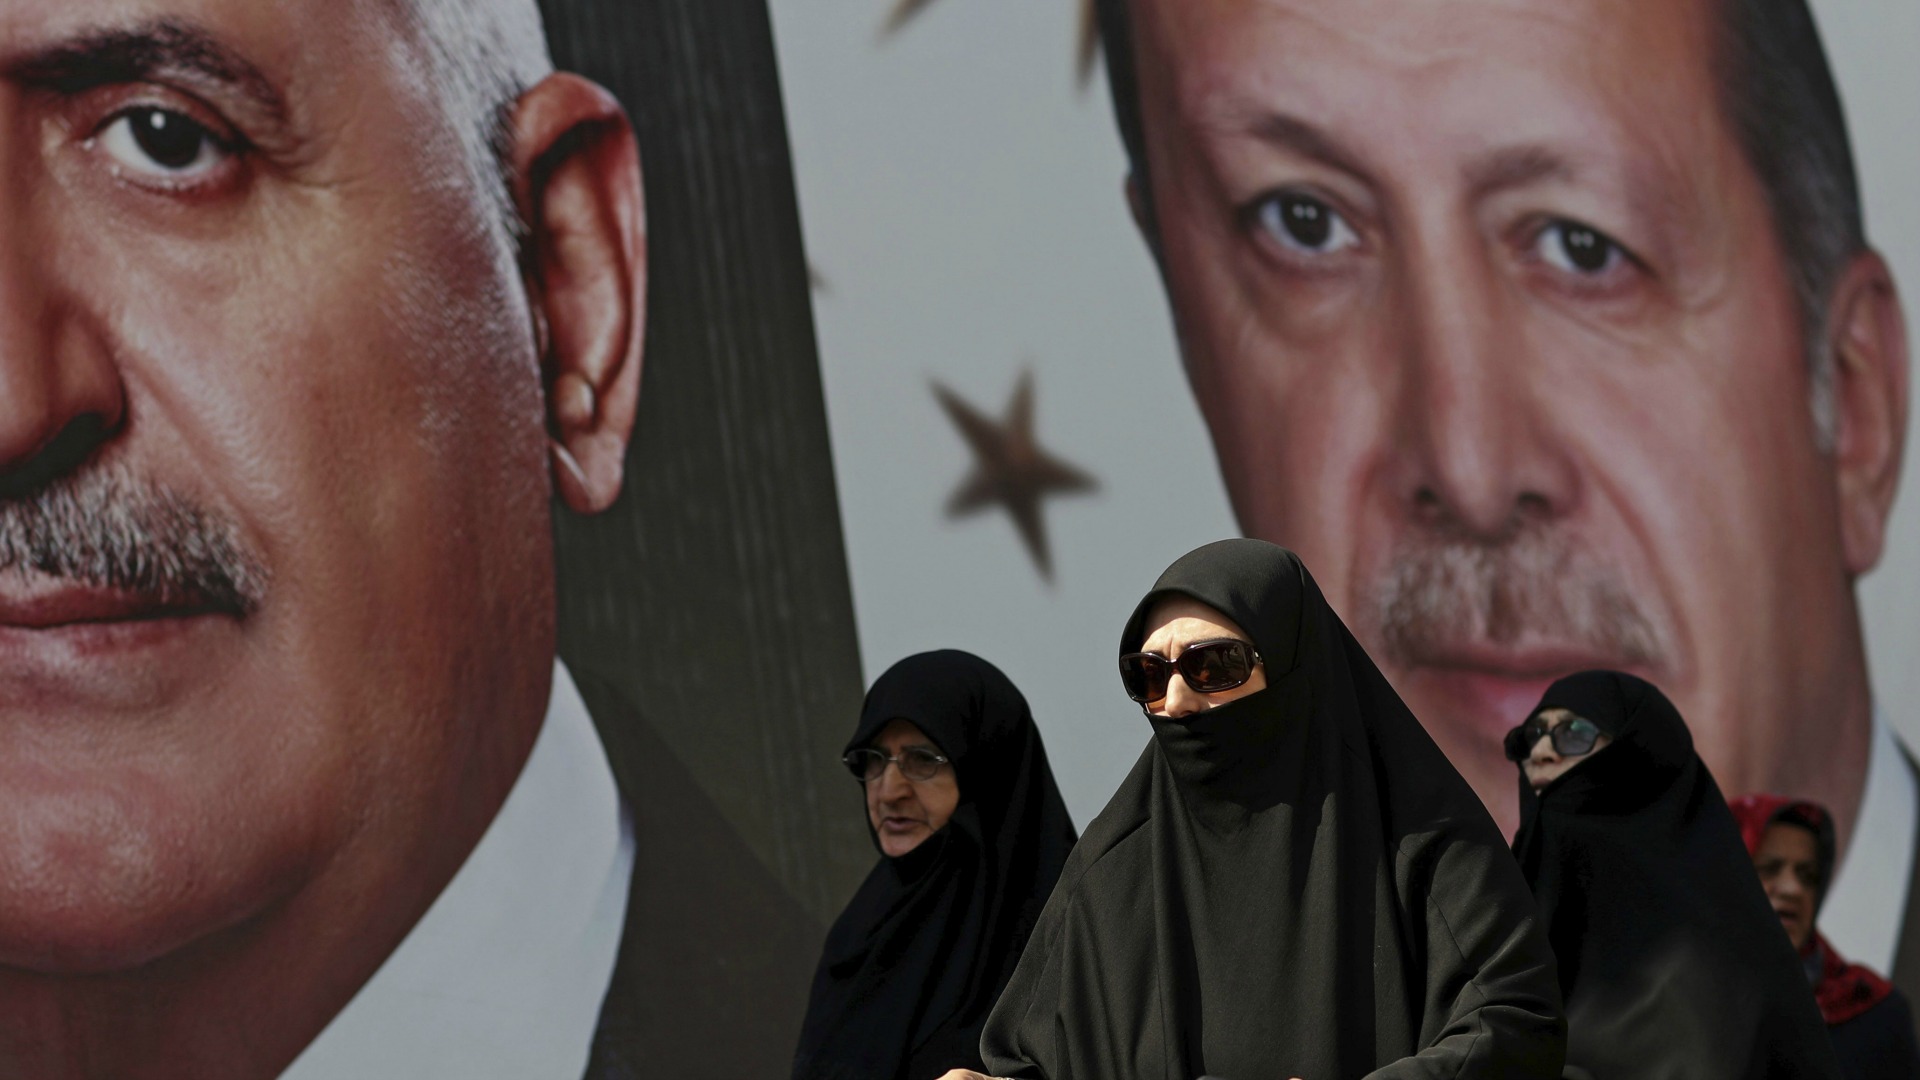 El enemigo extranjero protagoniza la campaña por el referéndum de Turquía